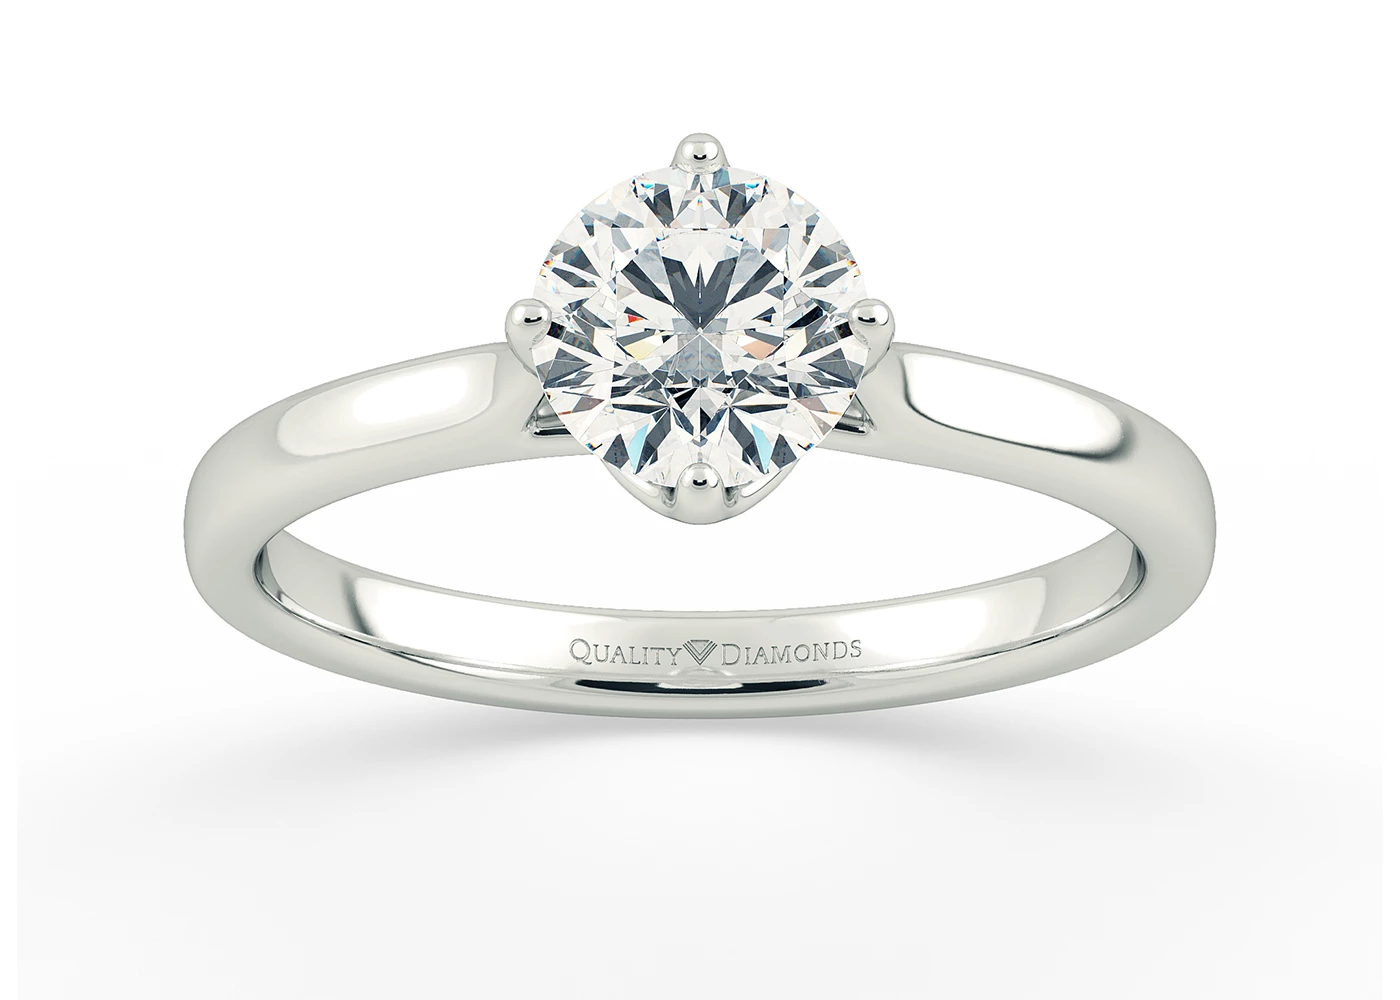 Round Brilliant Promessa Diamond Ring in 9K White Gold